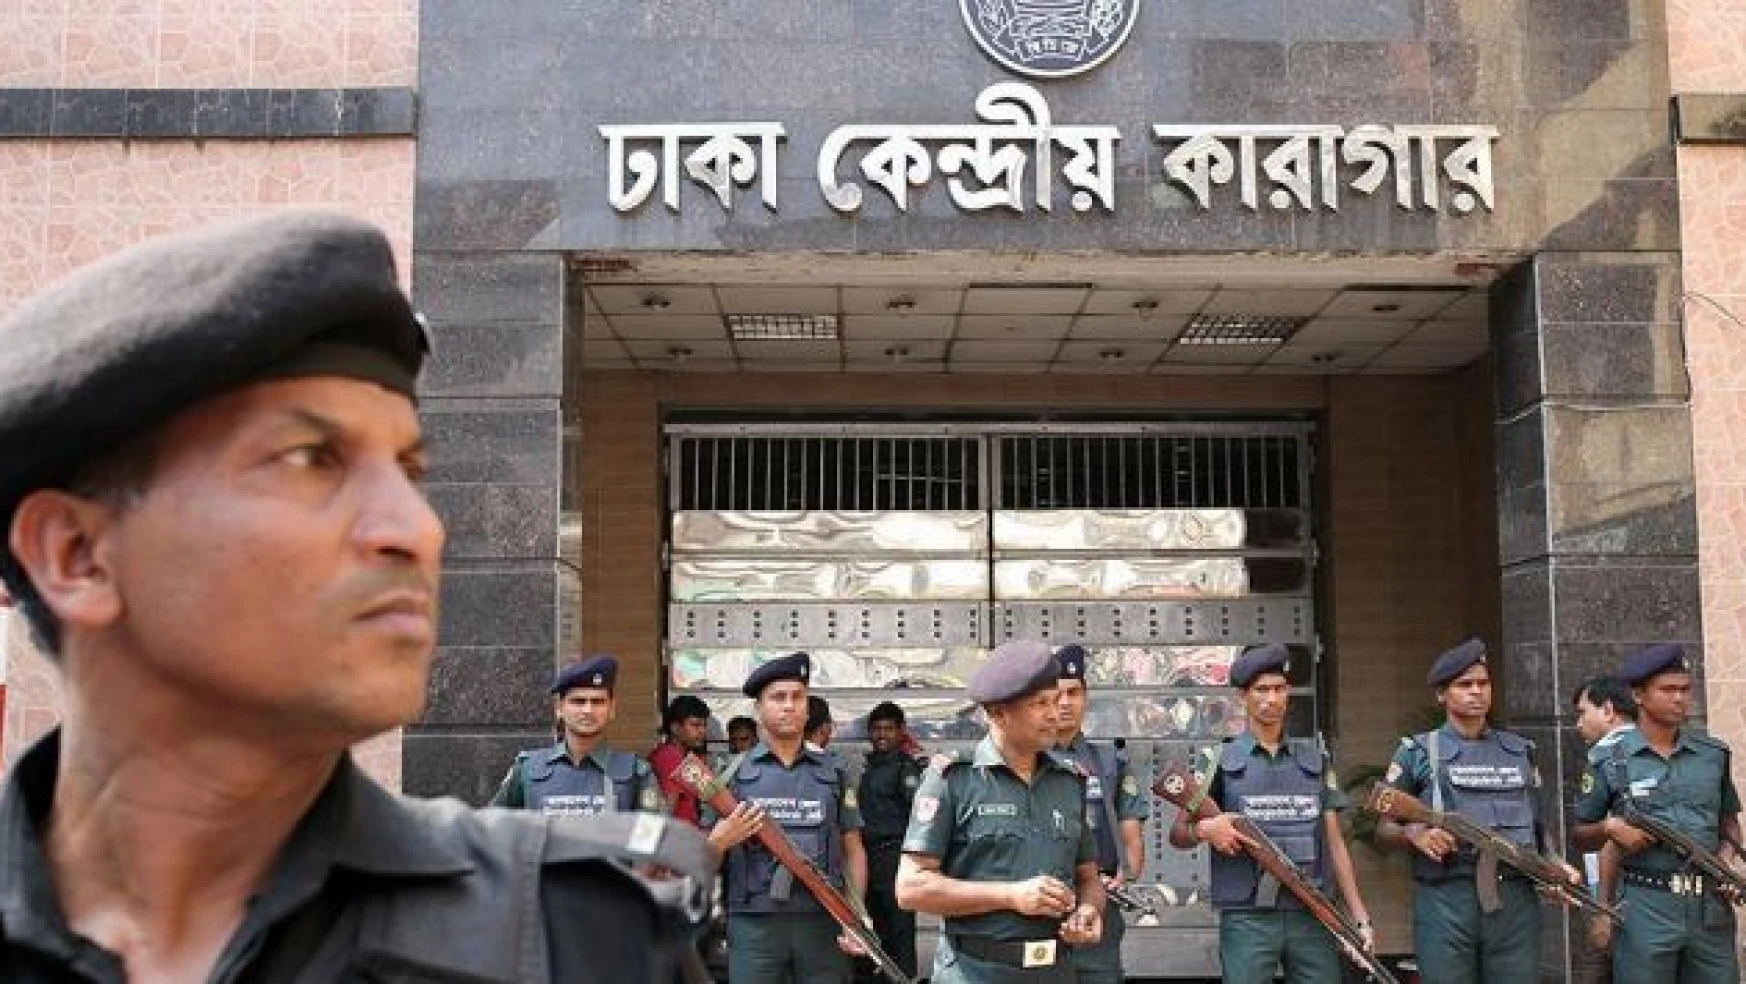 'Bangladeş'te yargı kararları siyasi muhalifleri sindirmeye yönelik'